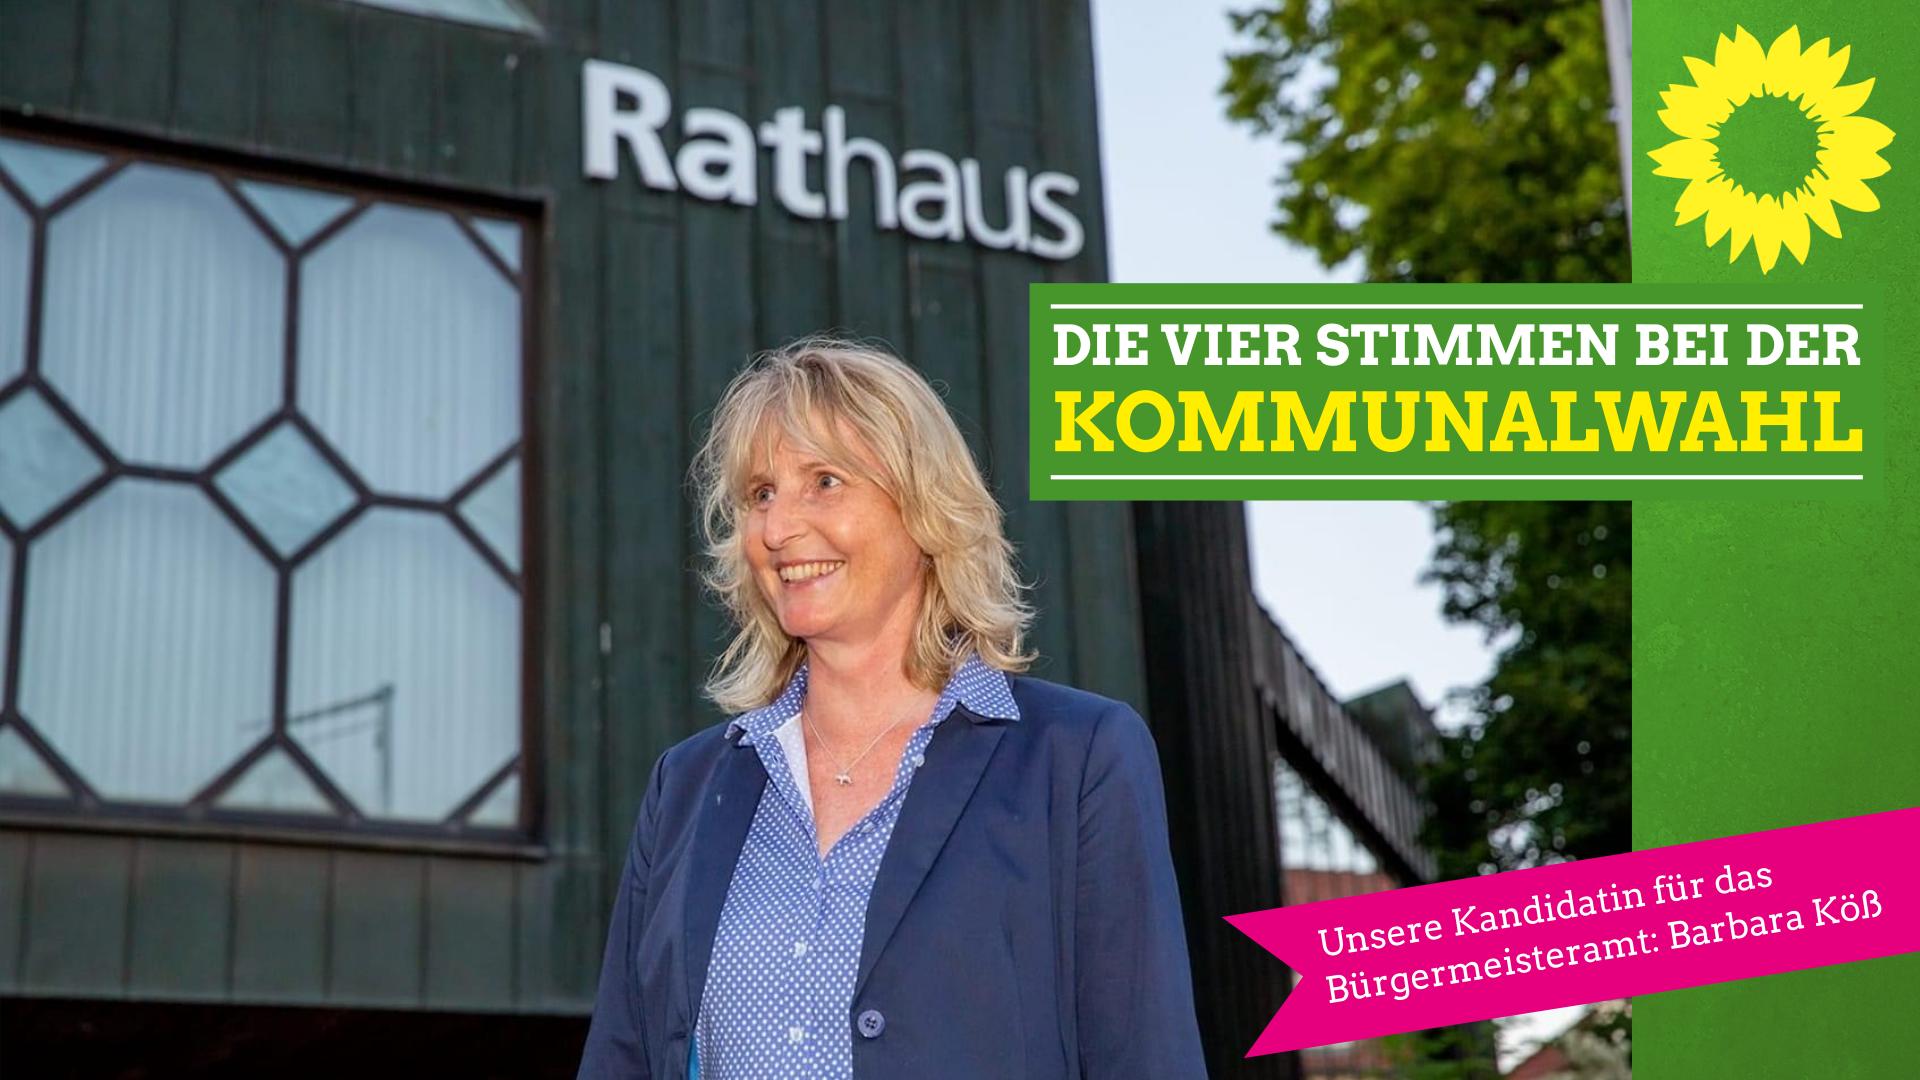 Unsere Kandidatin für das Bürgermeisteramt: Barbara Köß